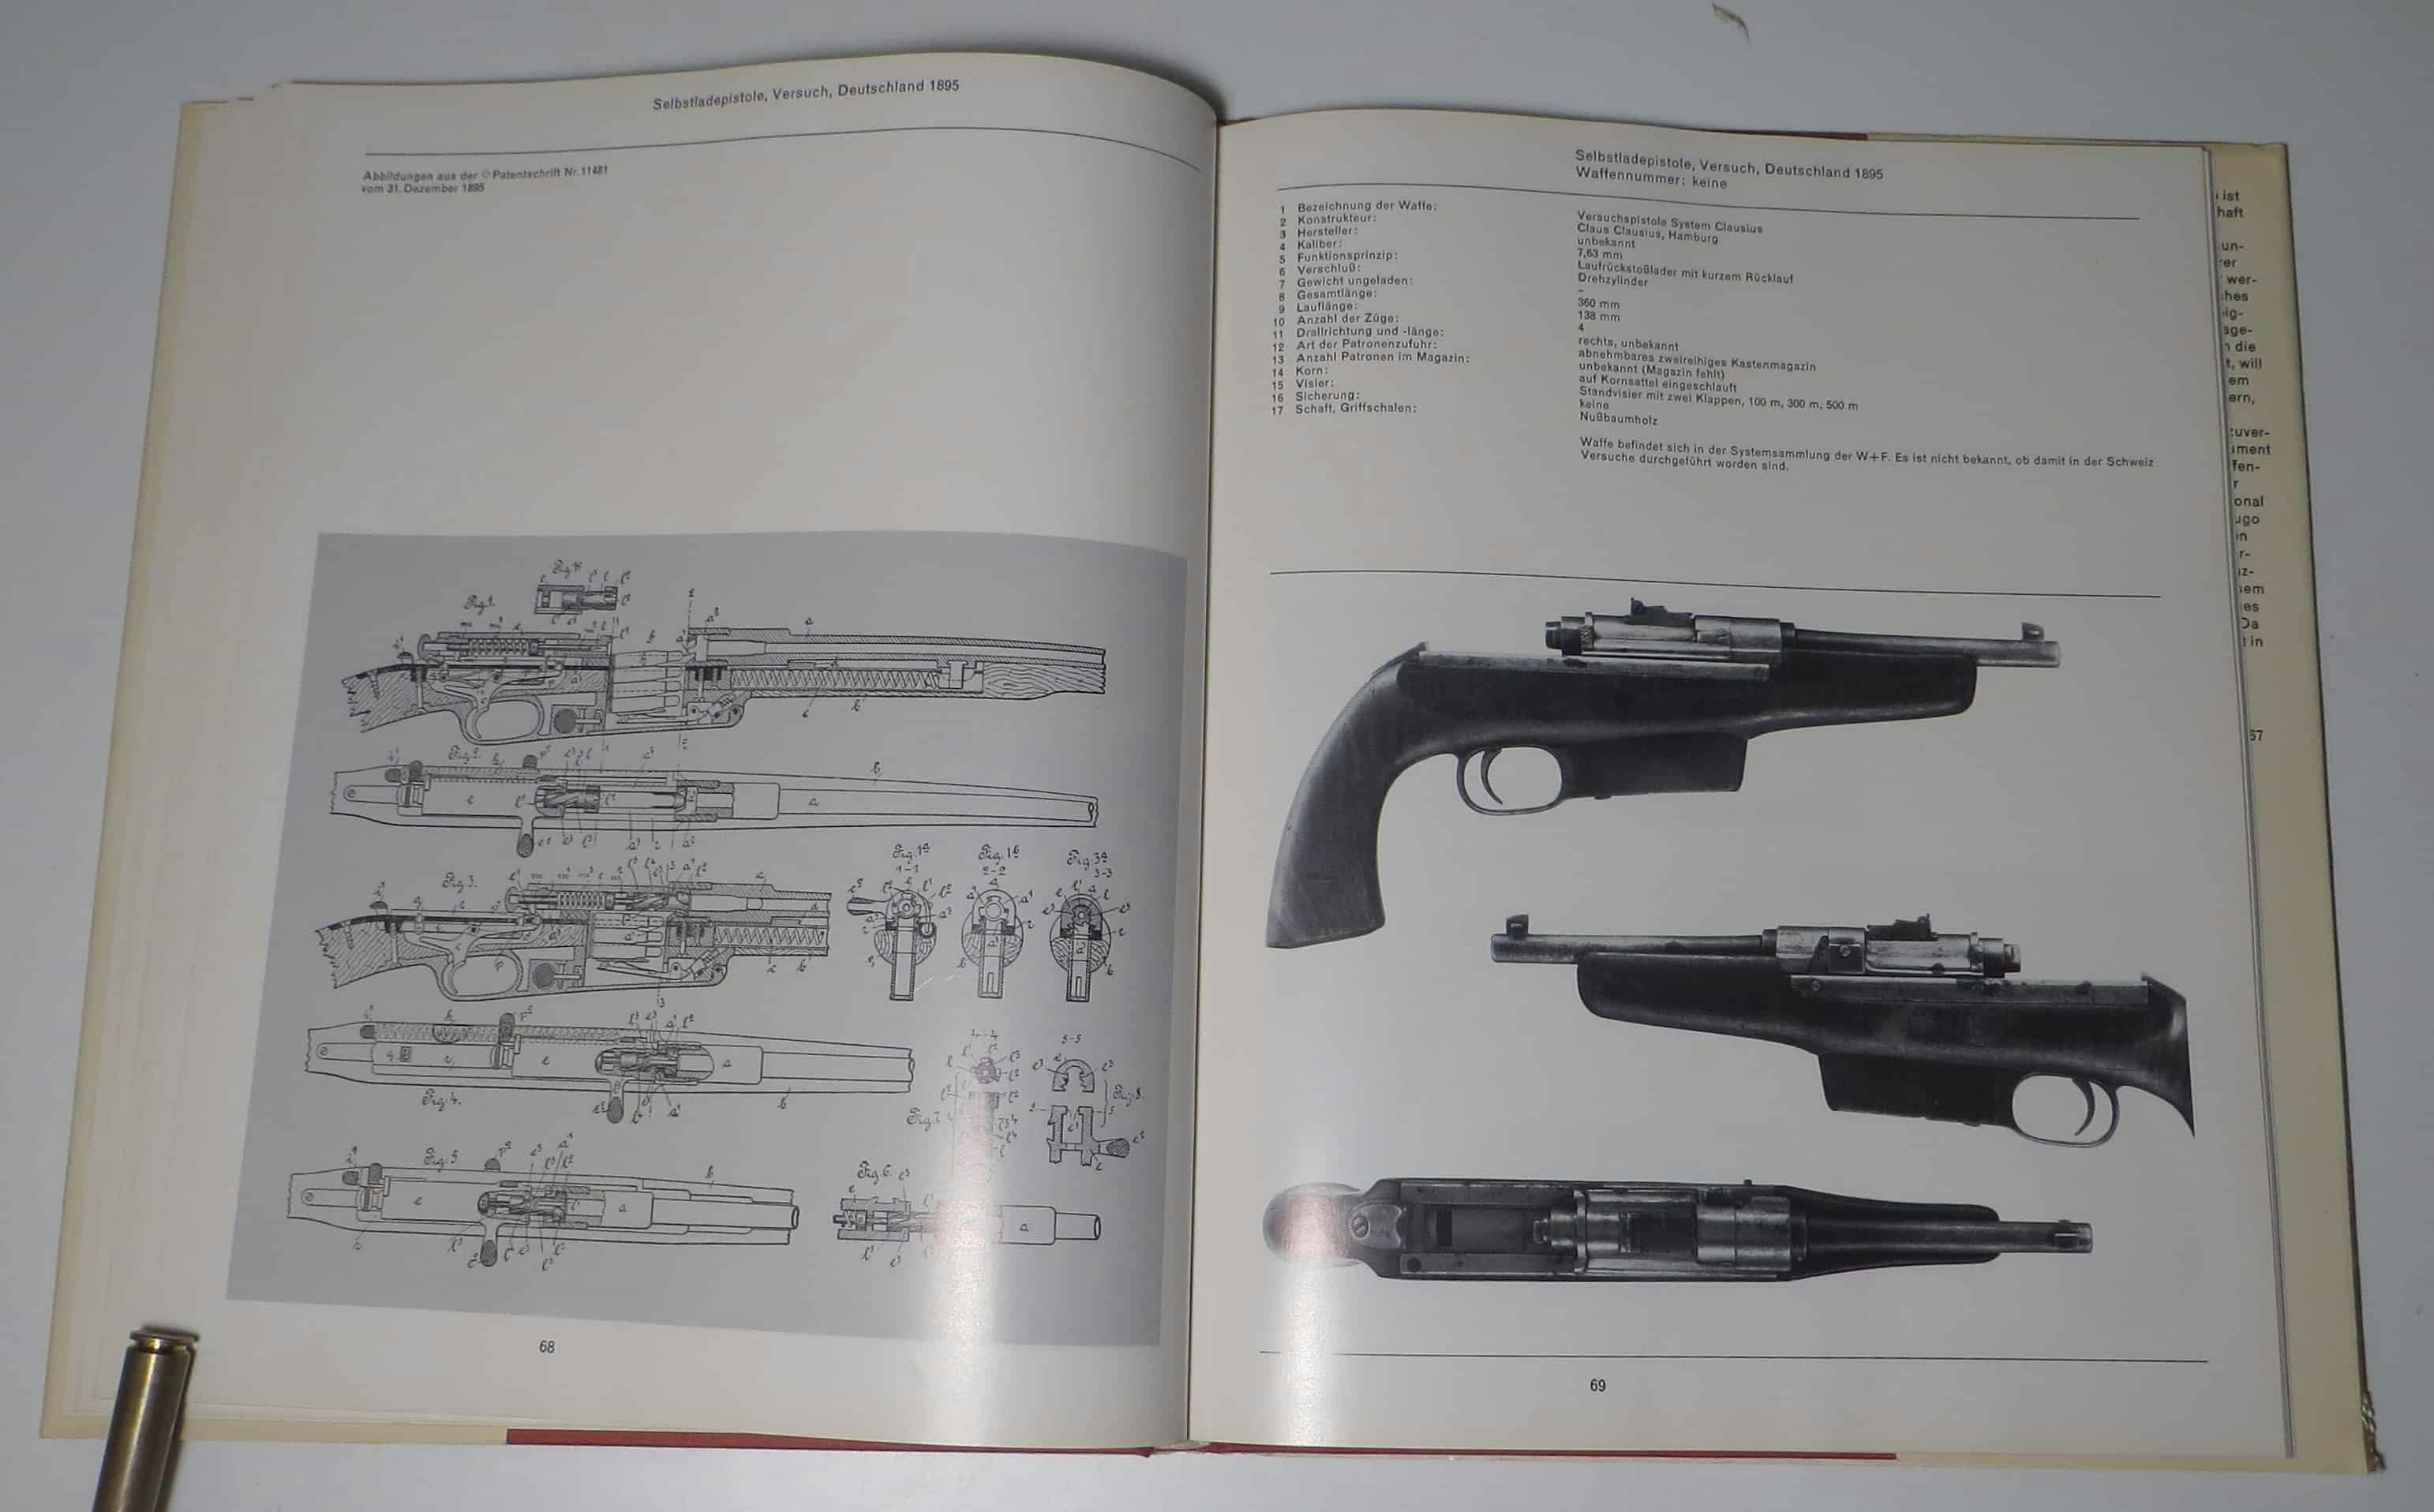 Kurios ausschauende Versuchspistole System Clausius, Hamburg. Gemäss Text befandt sich die Waffe in der Sammlung von W+F. Warum wusste anscheinend niemand.